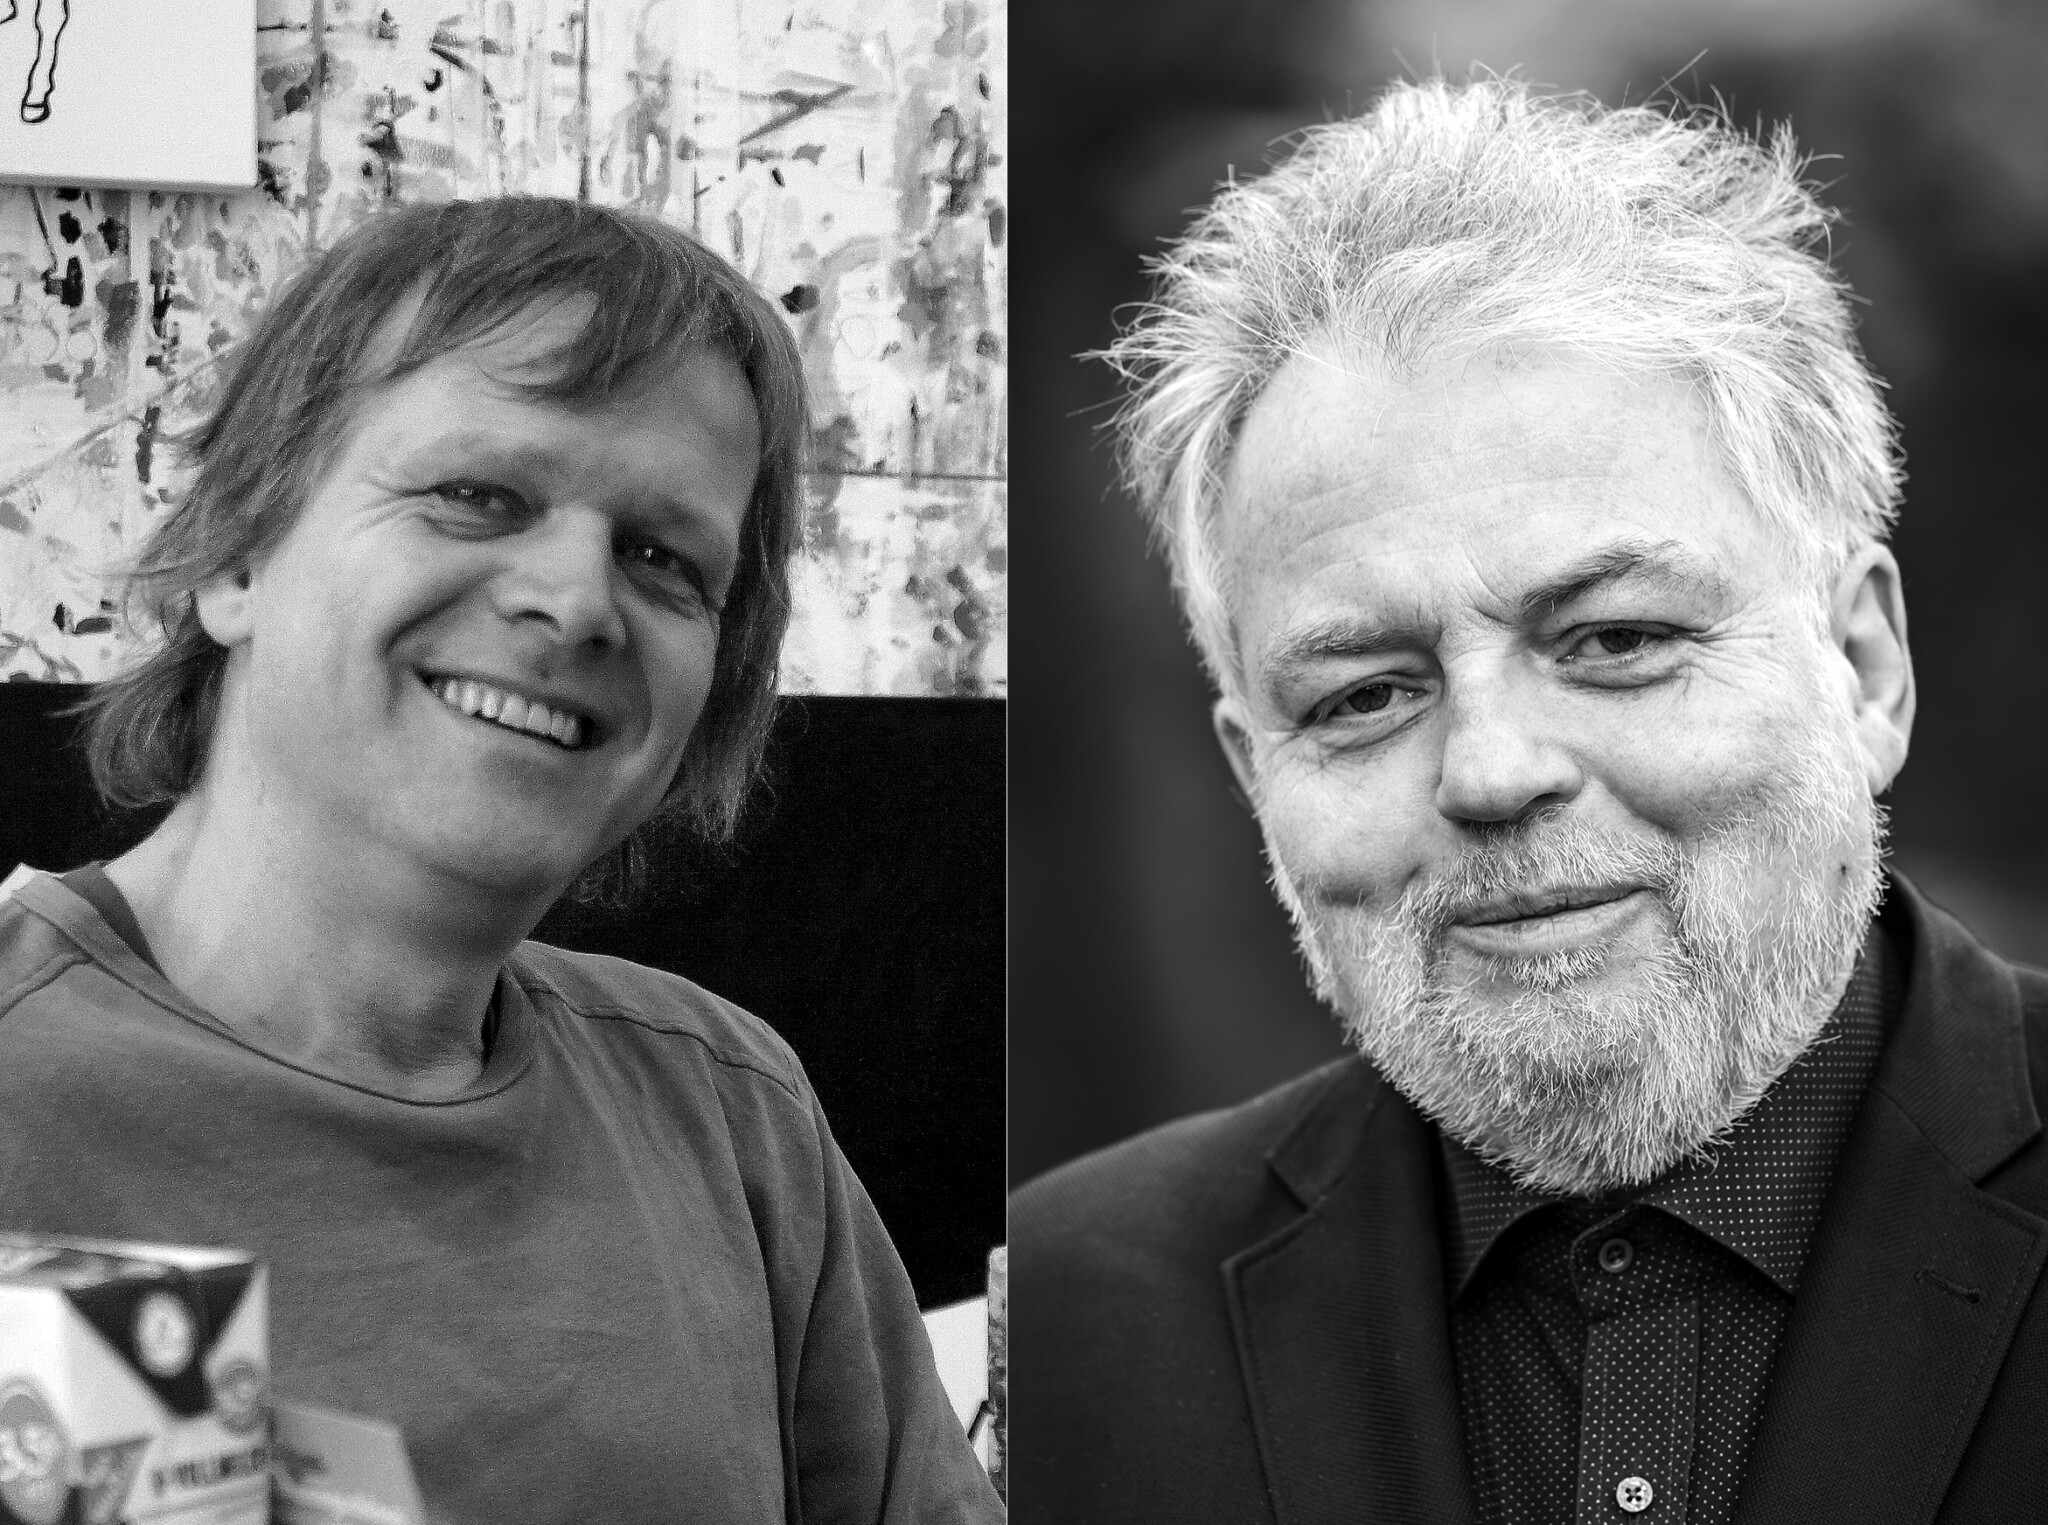 Lesung und Gespräch mit Moritz Götze und Lutz Rathenow in der LiteraturEtage Weimar @ LiteraturEtage Weimar